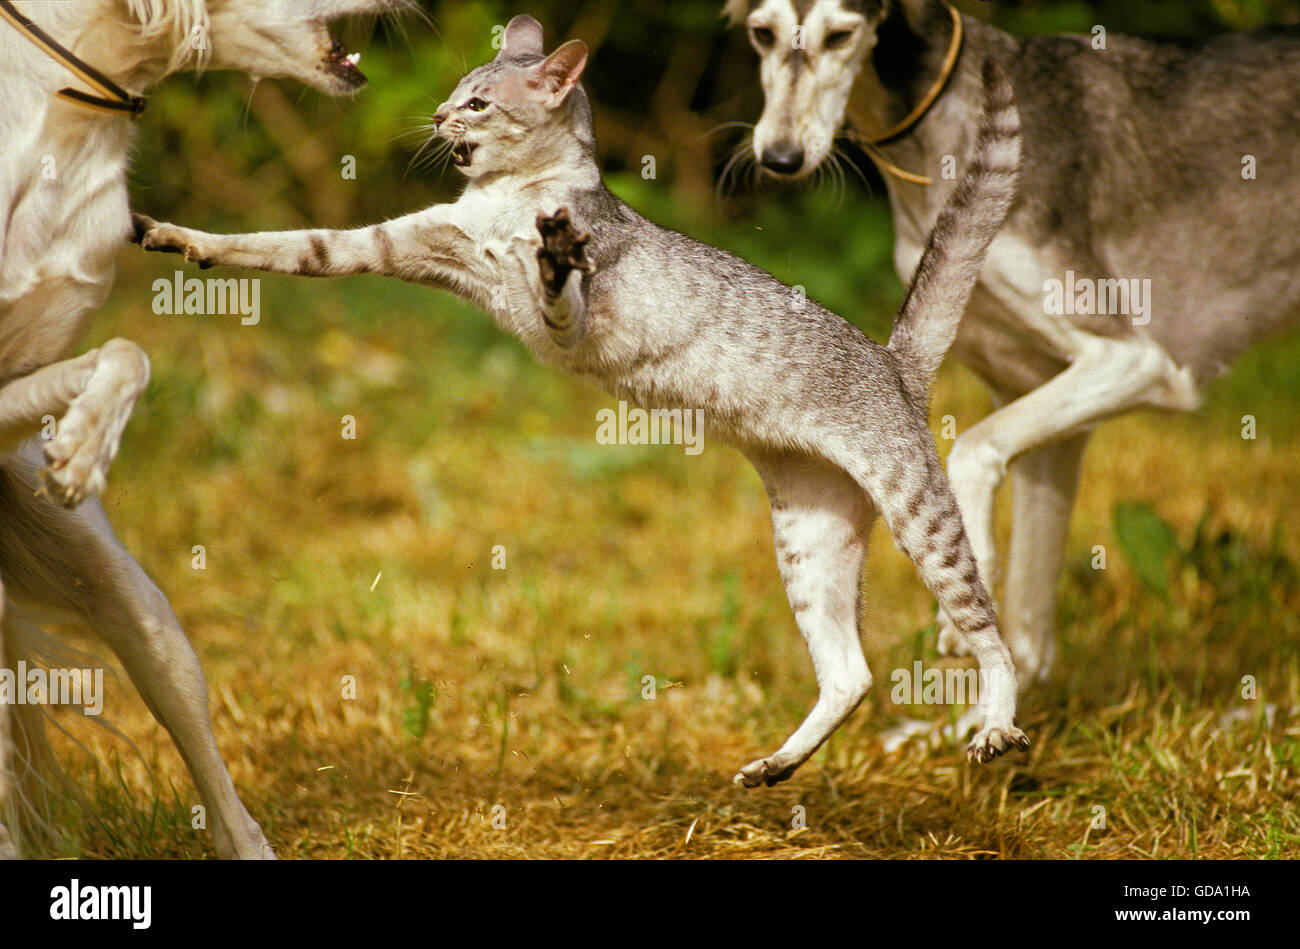 Oriental gatto domestico con cani Saluki, Postura aggressiva Foto Stock